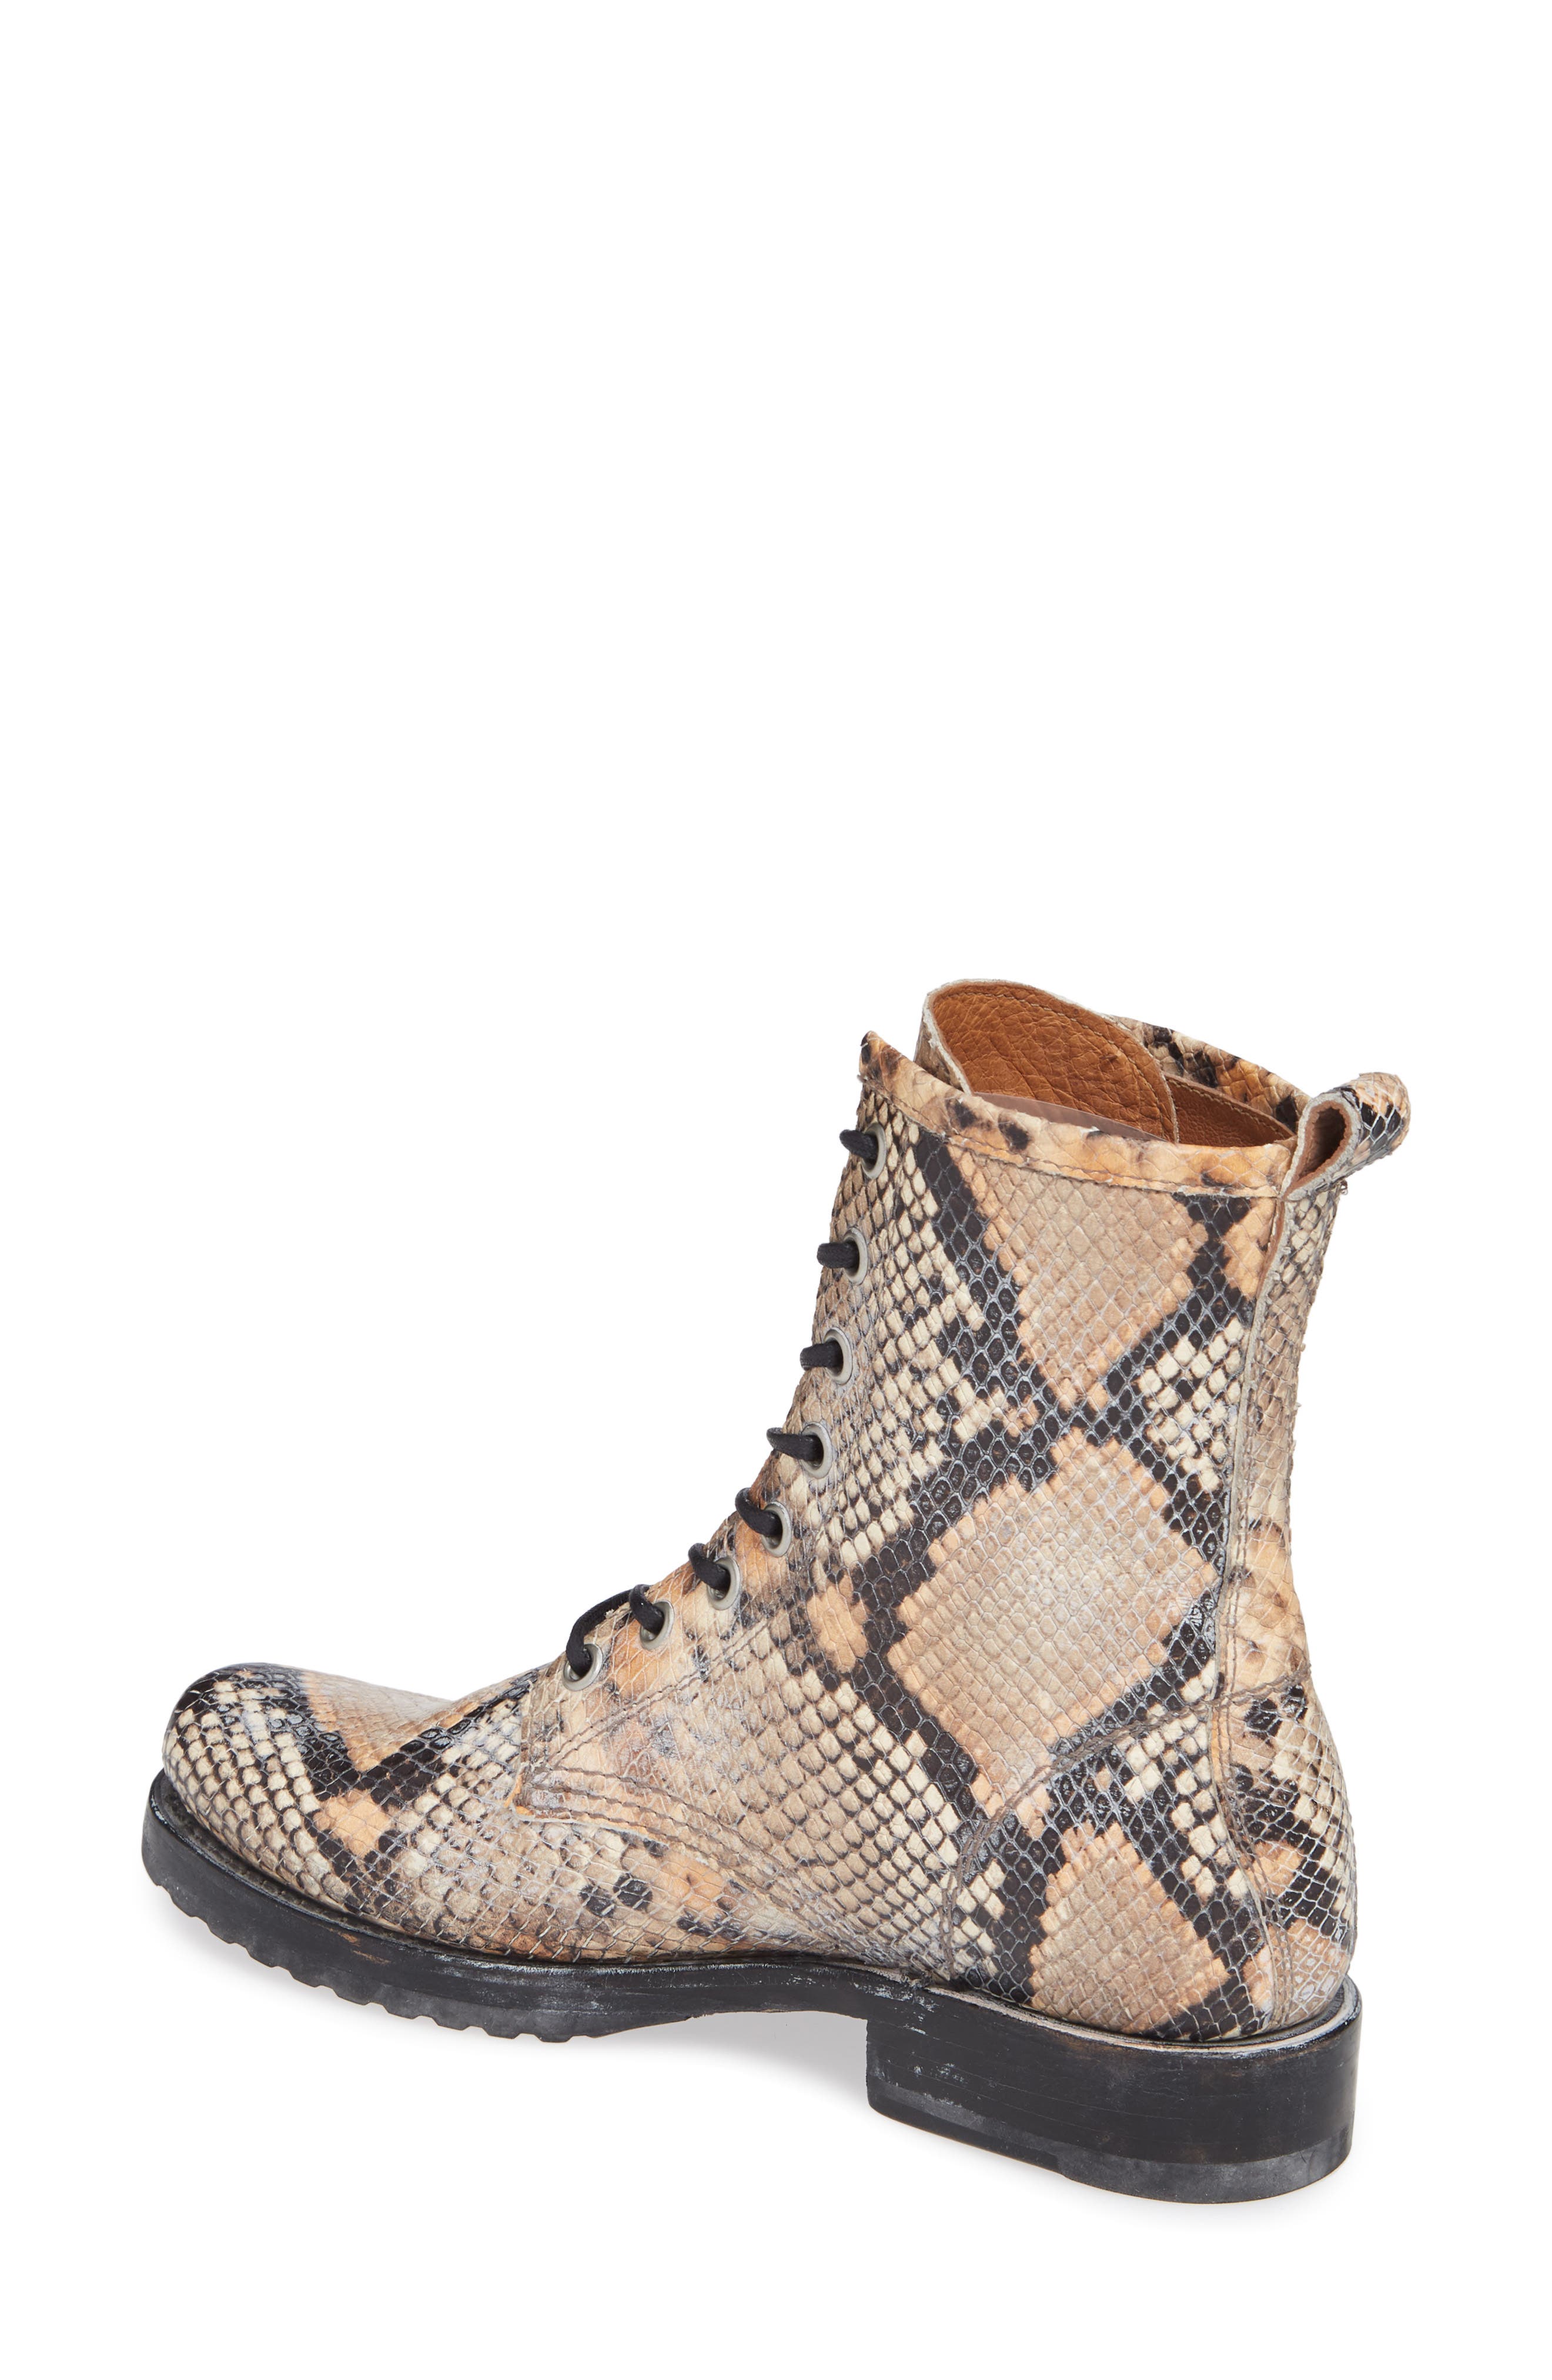 frye snakeskin boots